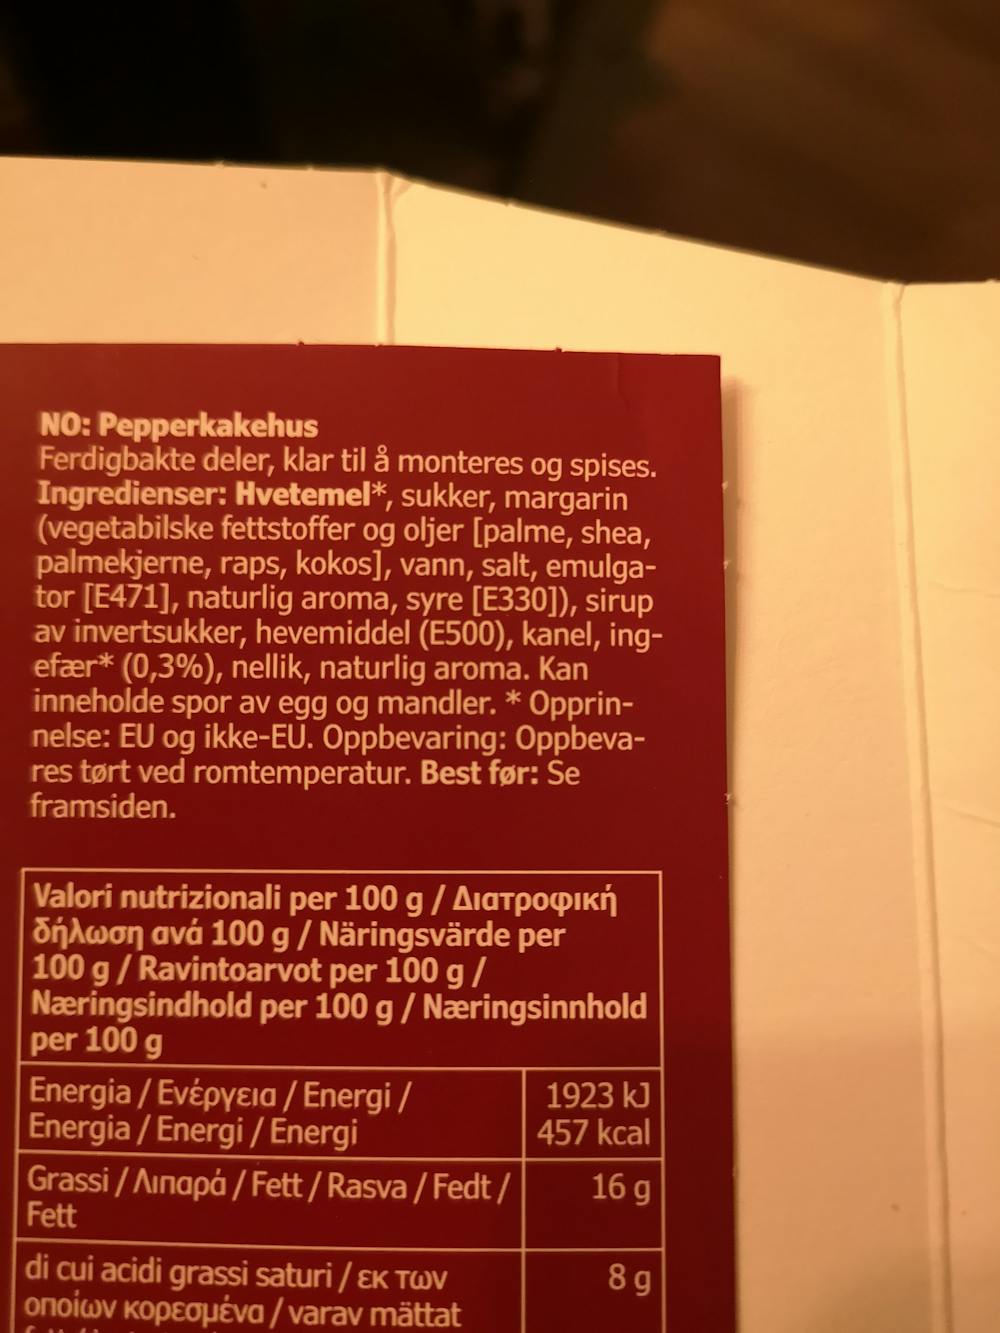 Ingredienslisten til Pepperkakehus, Ikea